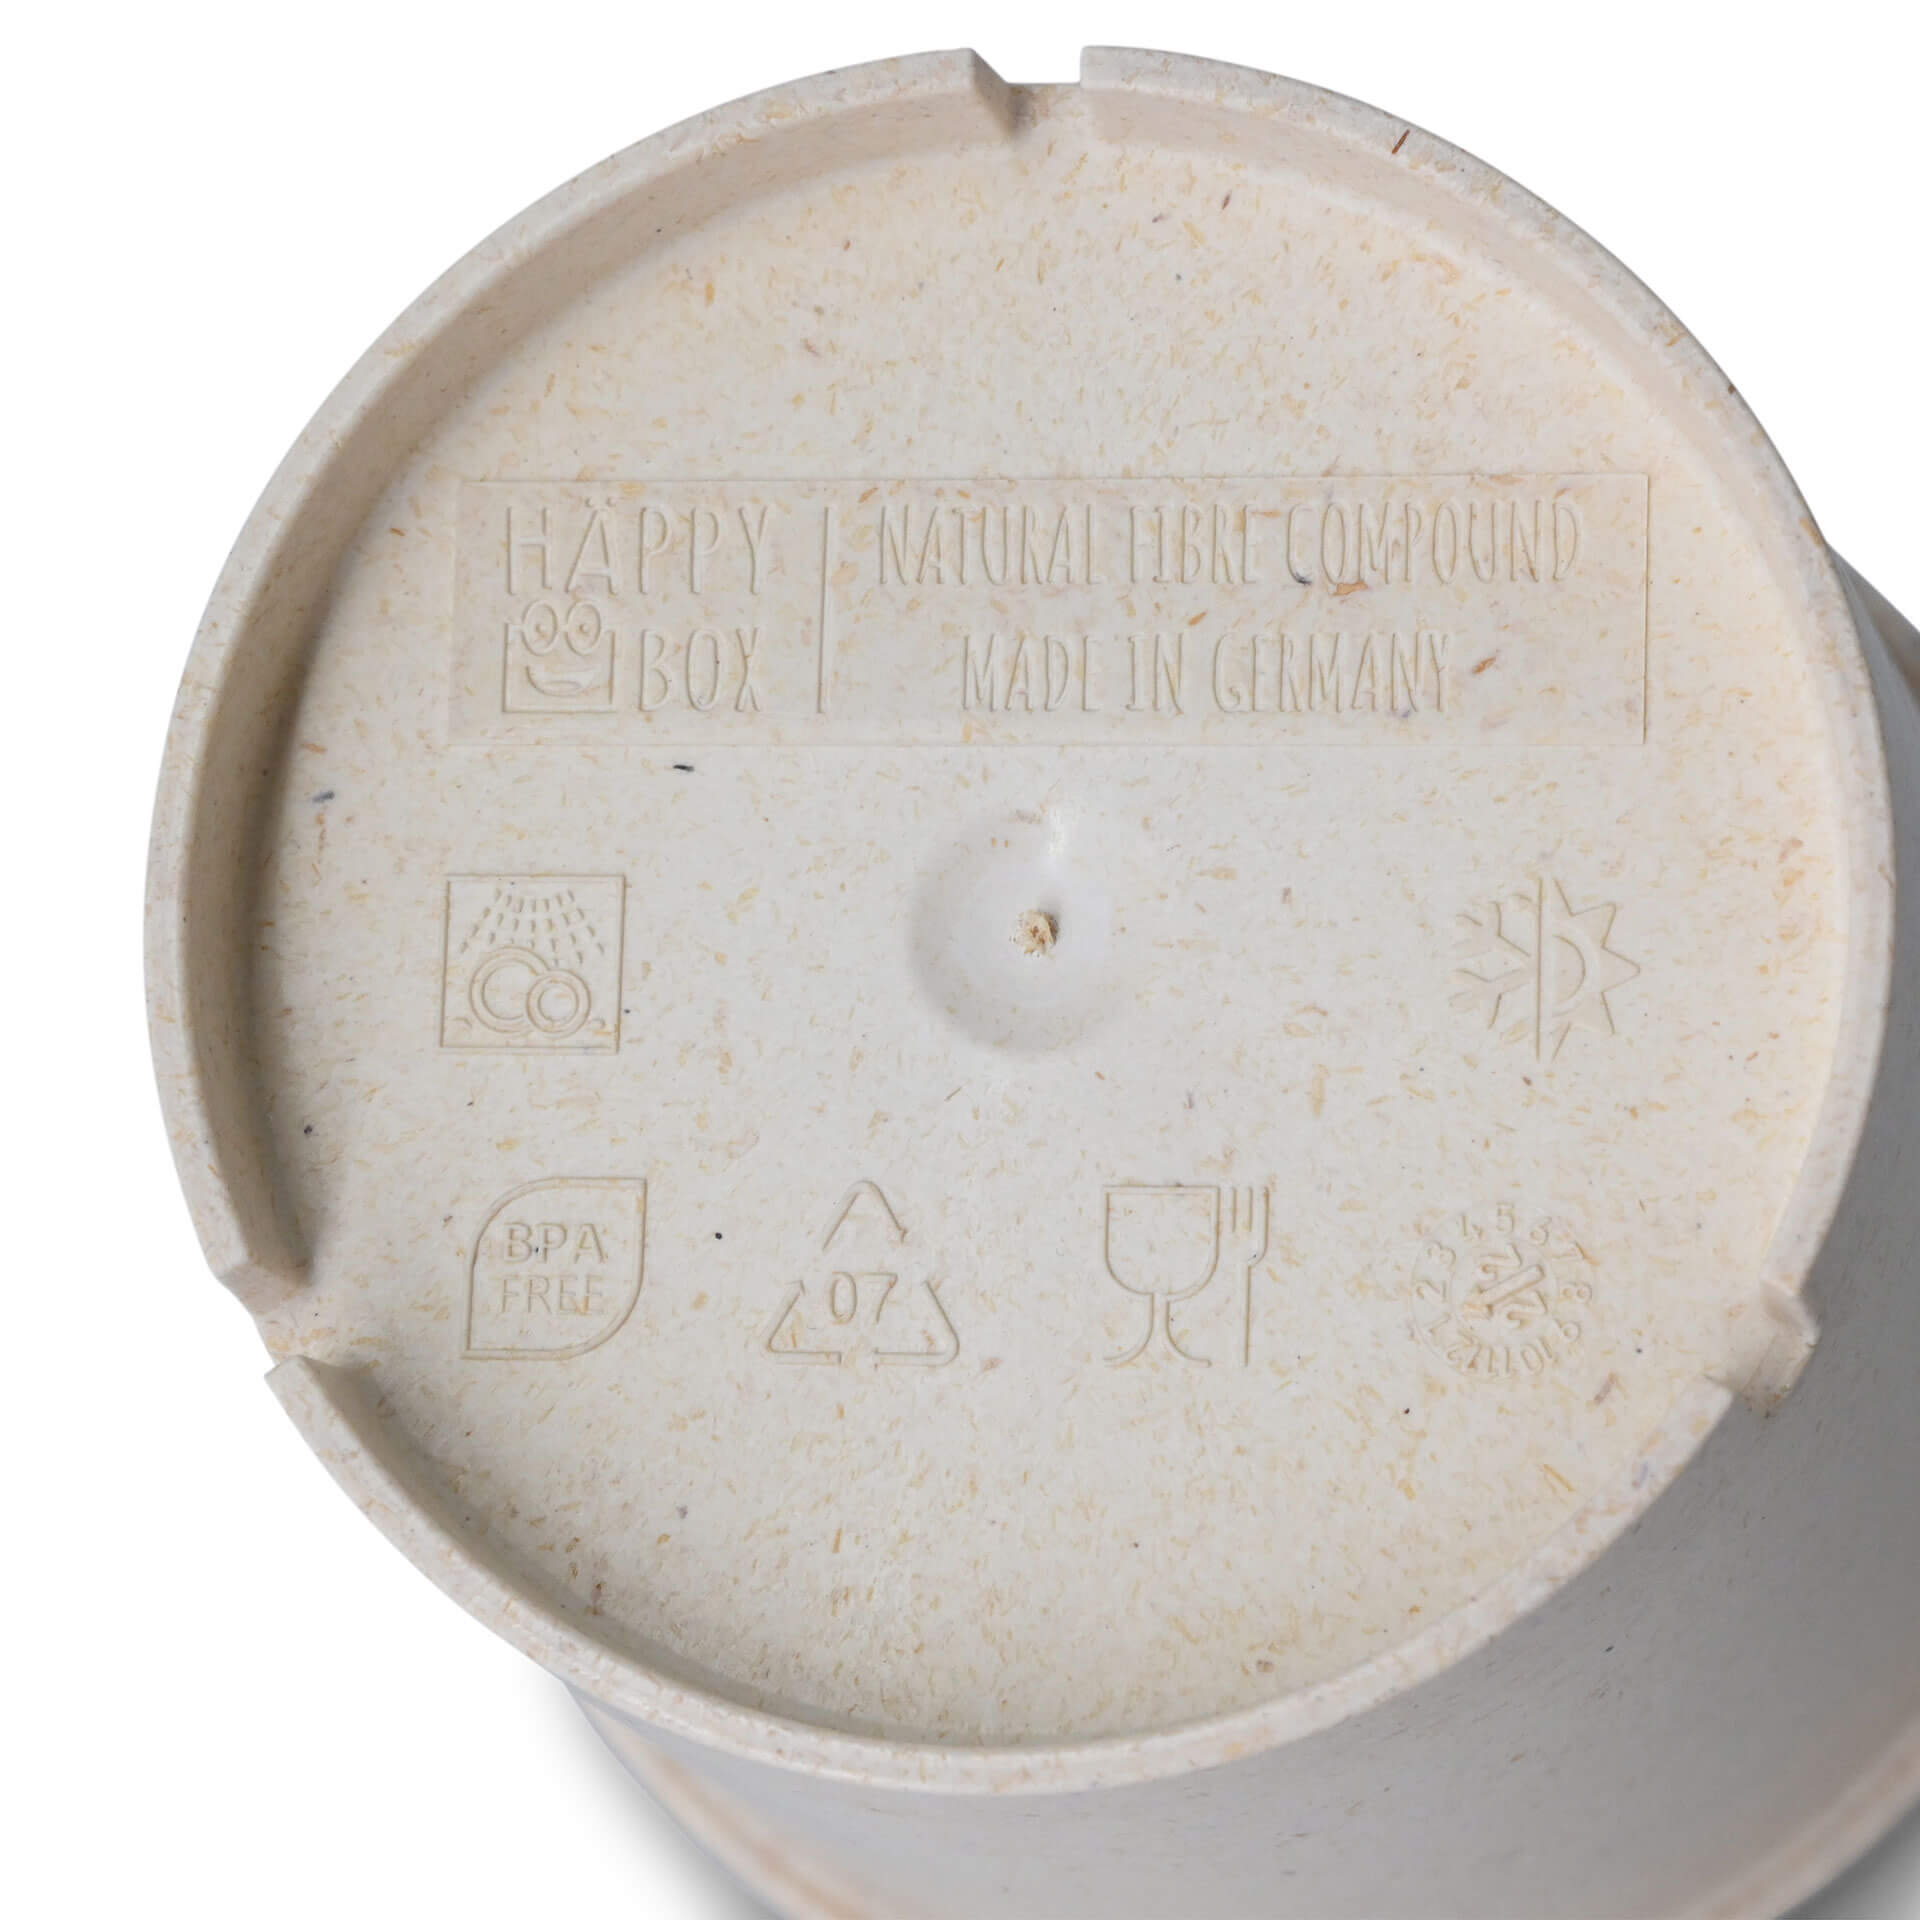 Mehrweg-Becher "Häppy Cup" 400 ml, Ø 95 mm, Cashew / creme-weiß